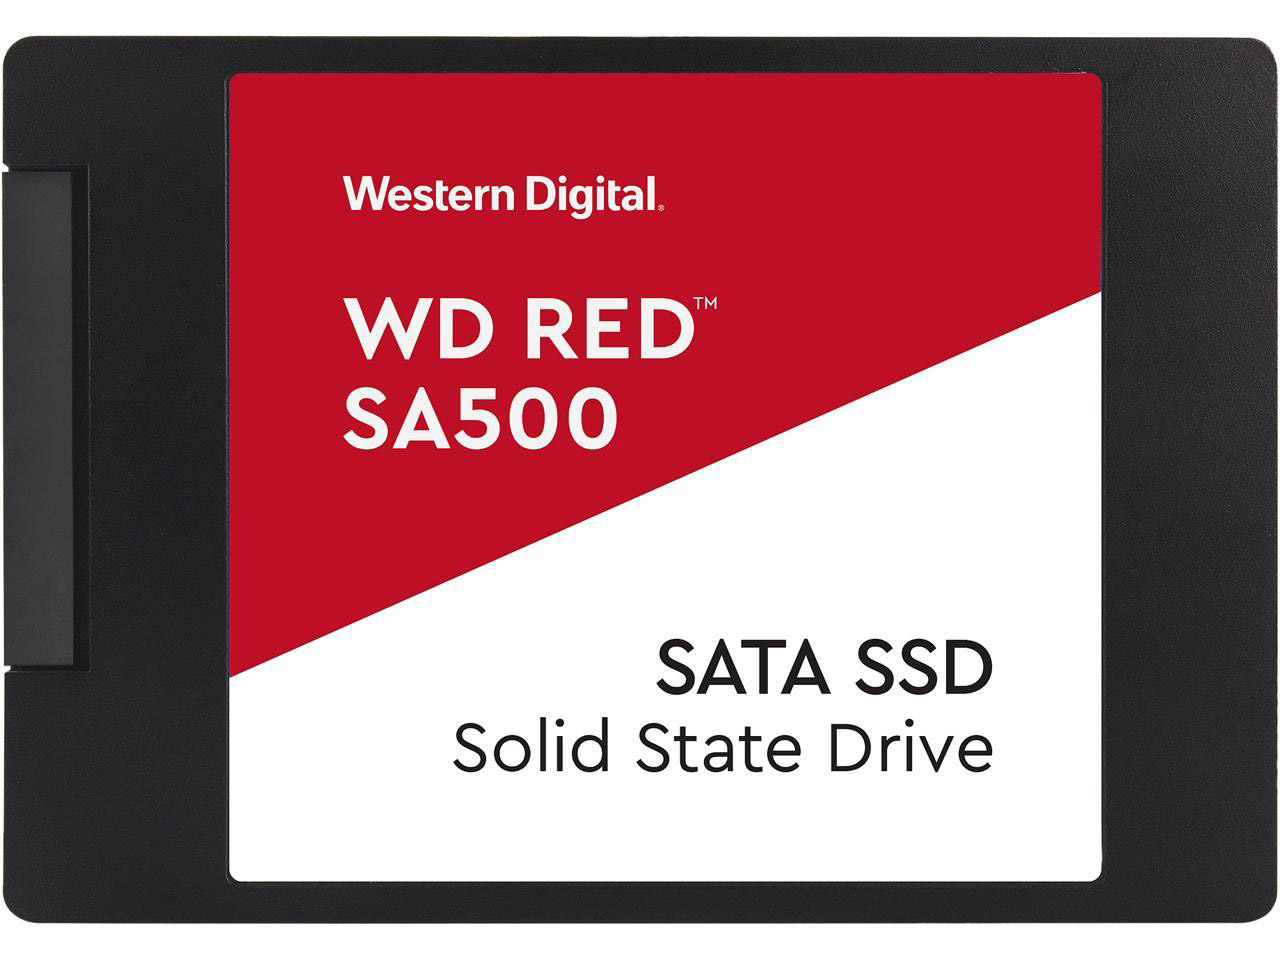 WD Red™ SA500 SATA SSD
